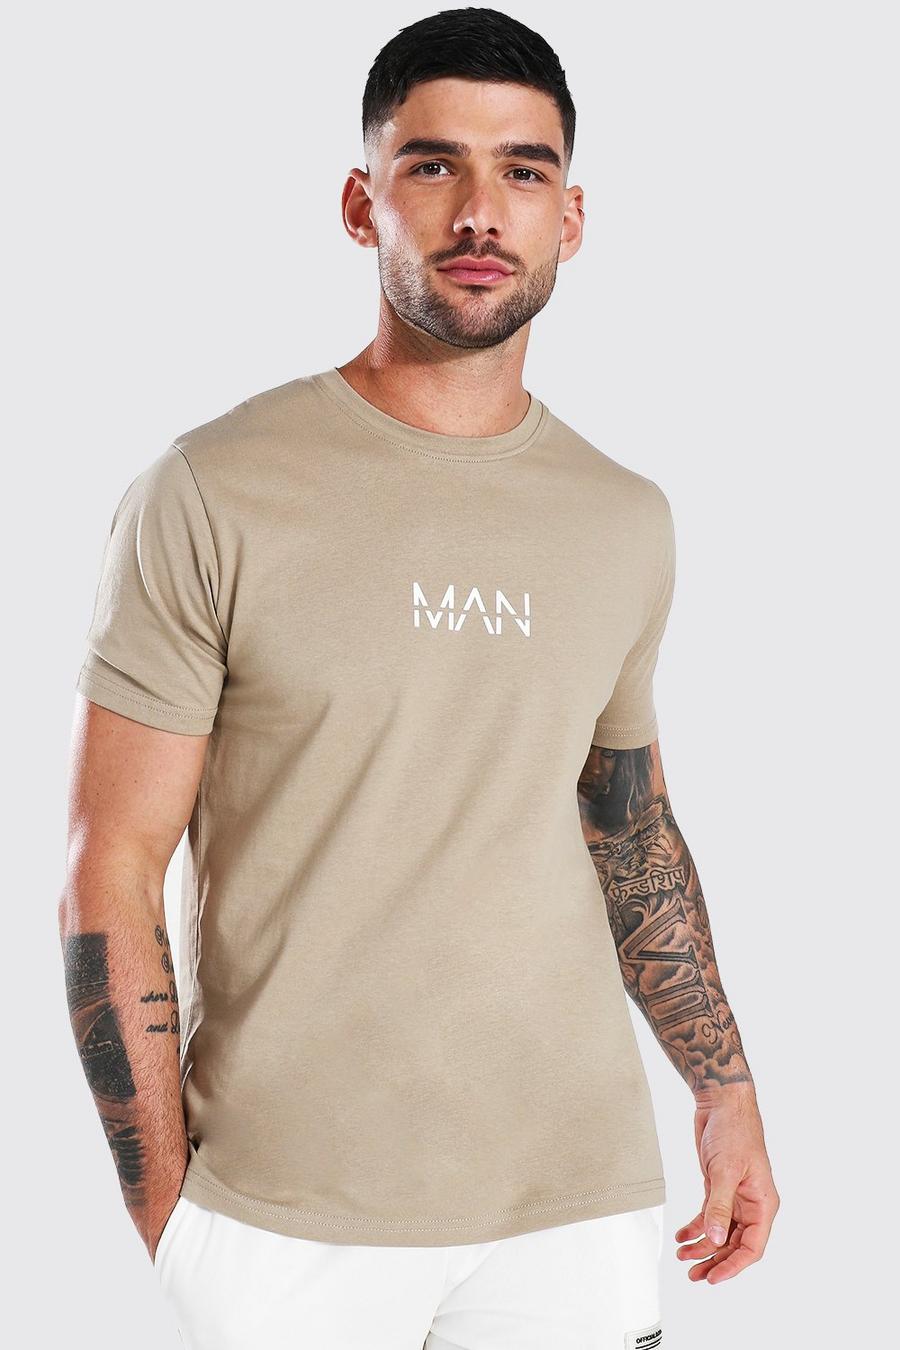 T-shirt - MAN, Sage silver image number 1